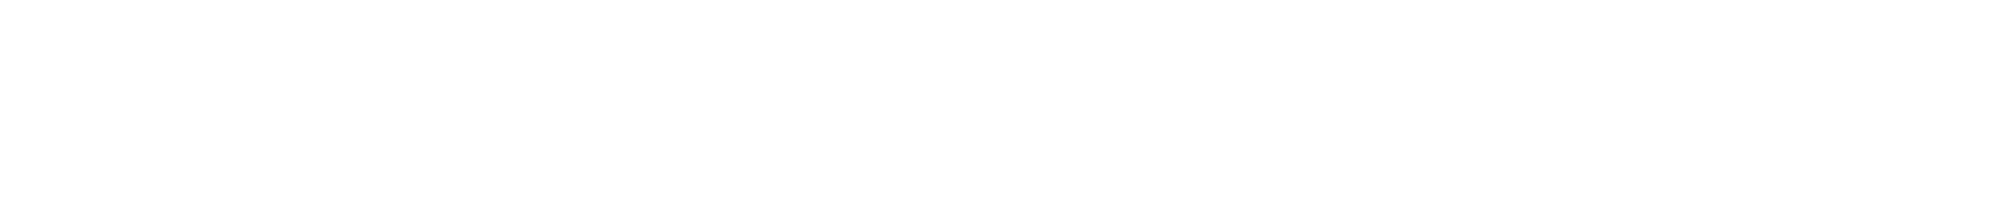 AI Executive_Logo Alternative (White)-06